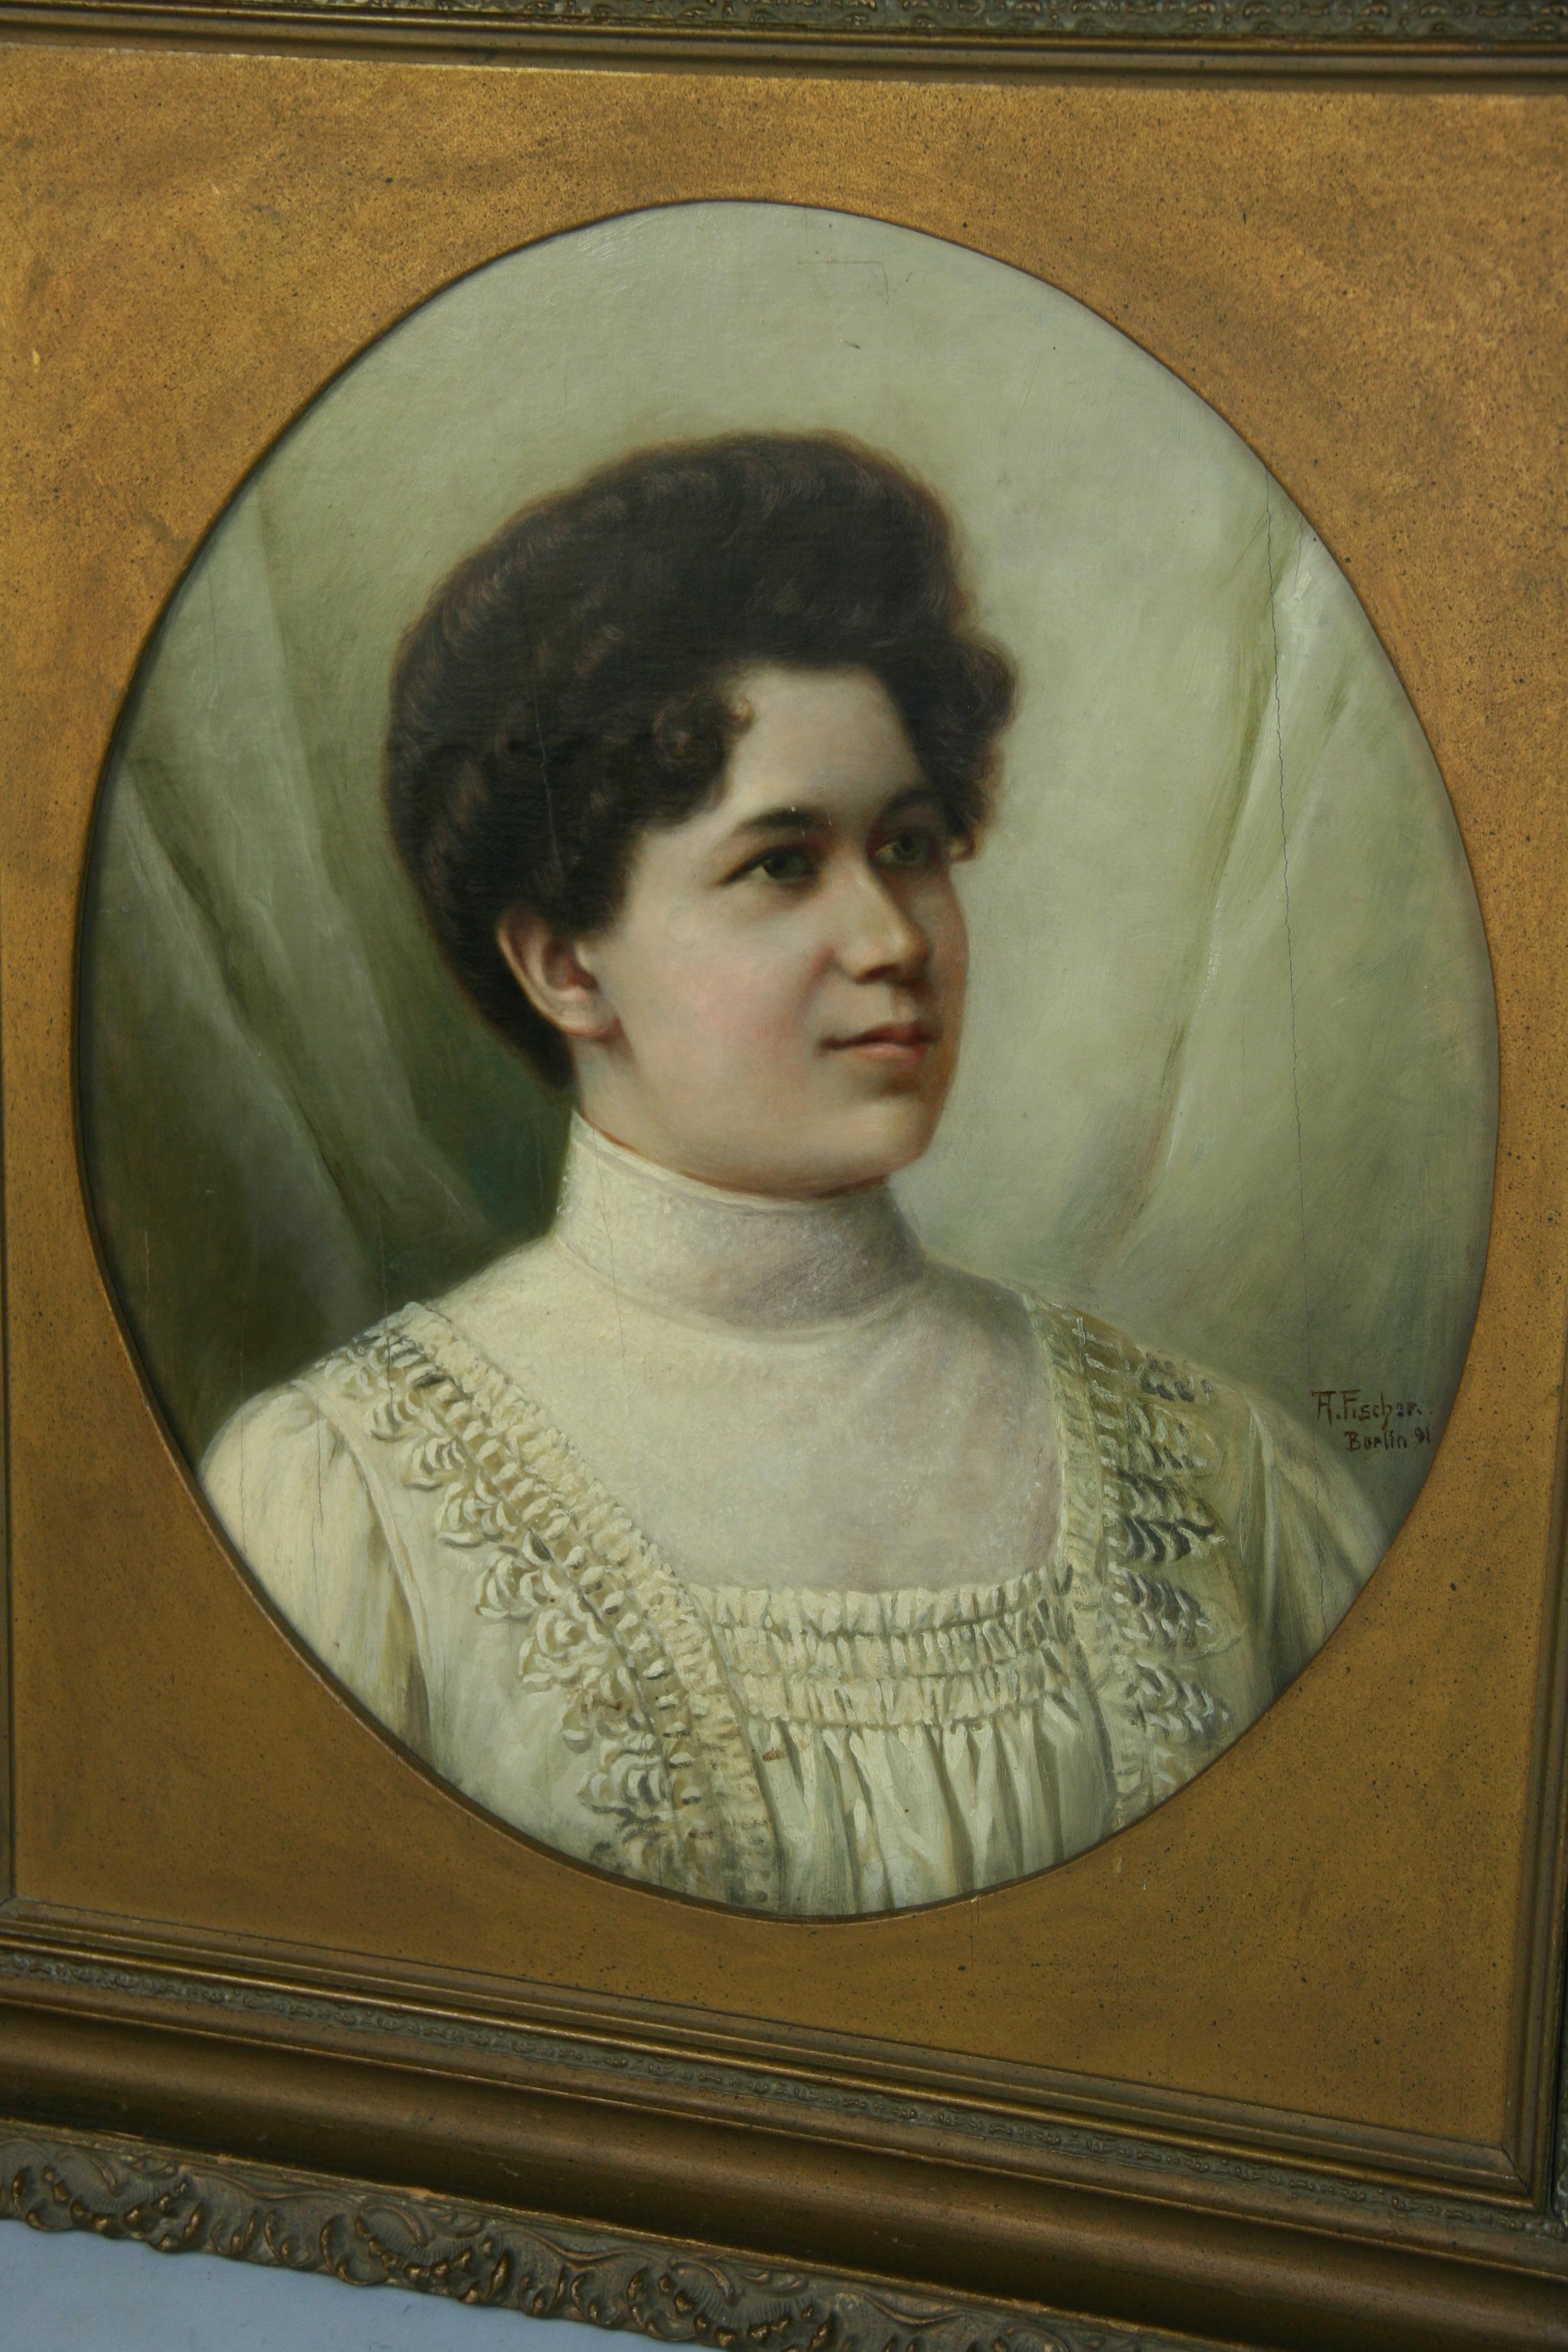 5055 Portrait à l'huile d'une femme allemande
dans un cadre d'époque sur carton
Signé T.H.Fischem Berlin 91
Taille de l'image 19.5x16.5